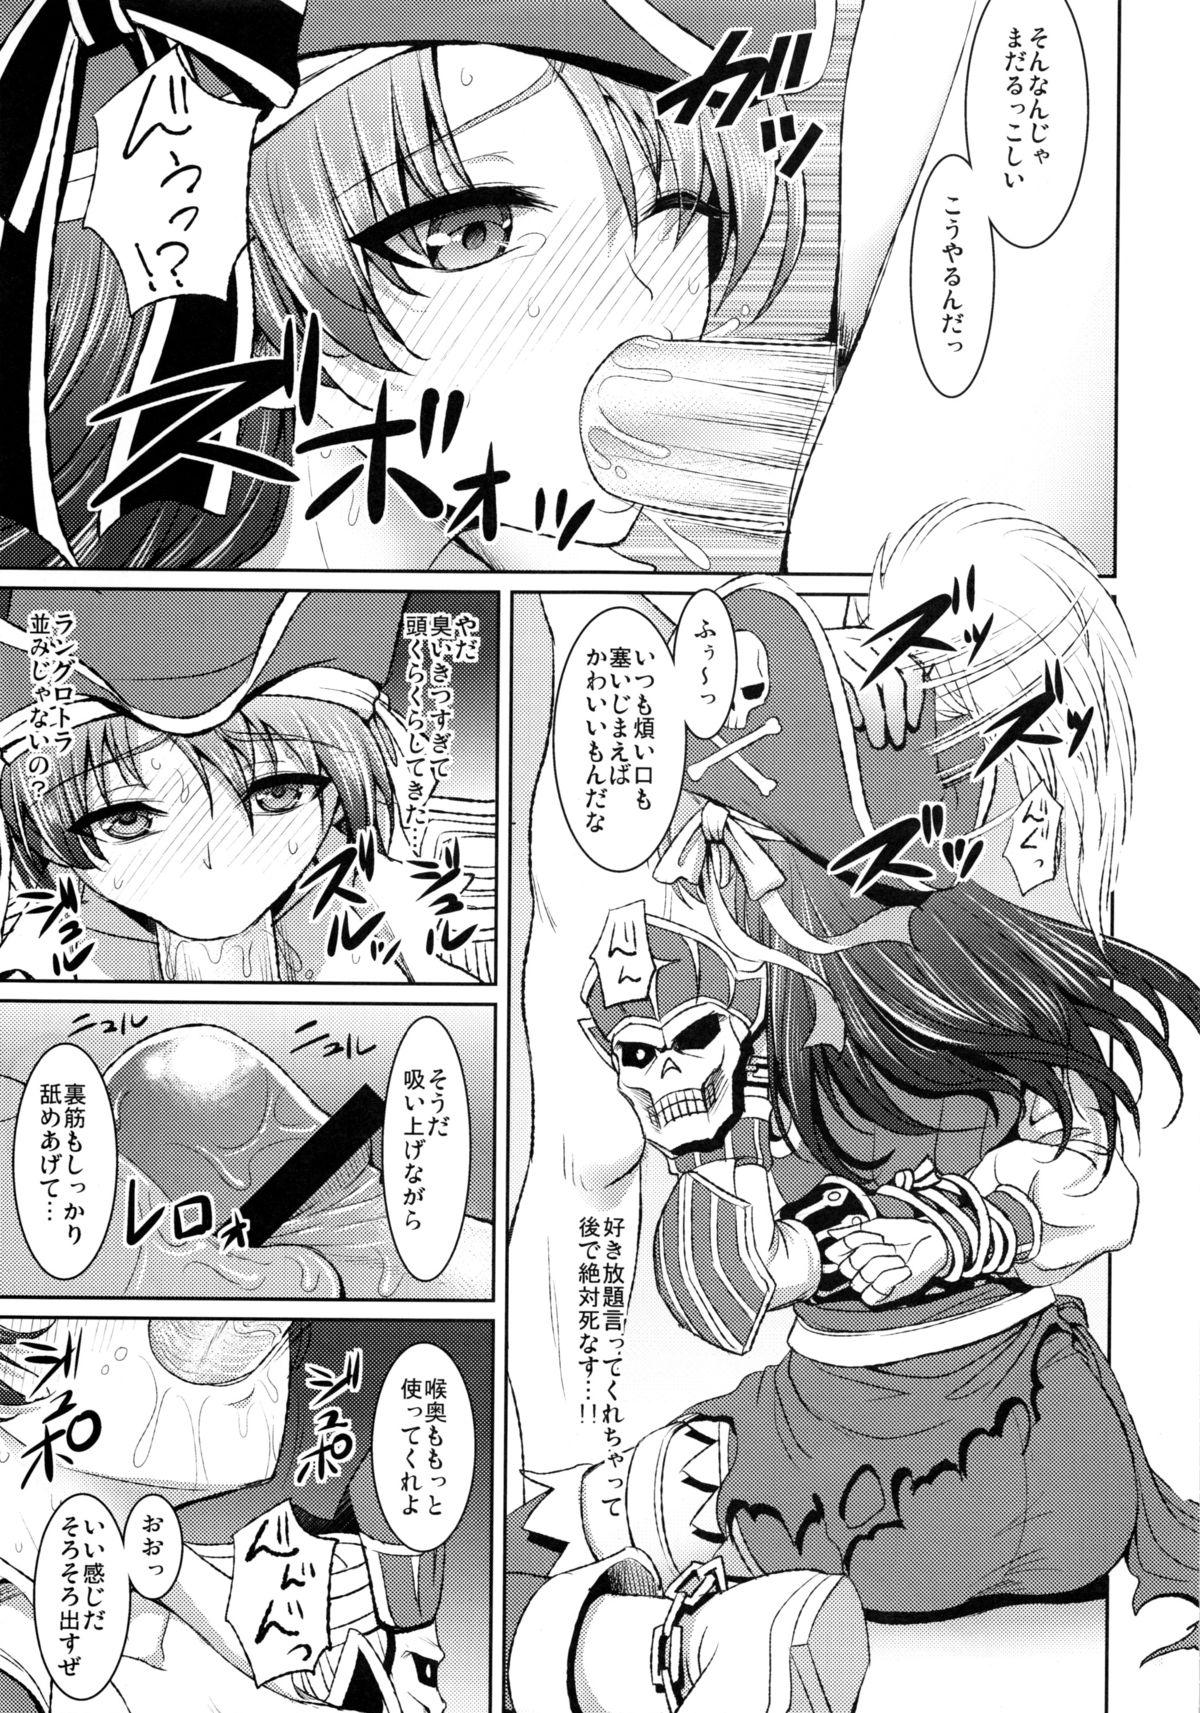 Rola Kaizoku Musume no Gosan - Monster hunter Siririca - Page 8